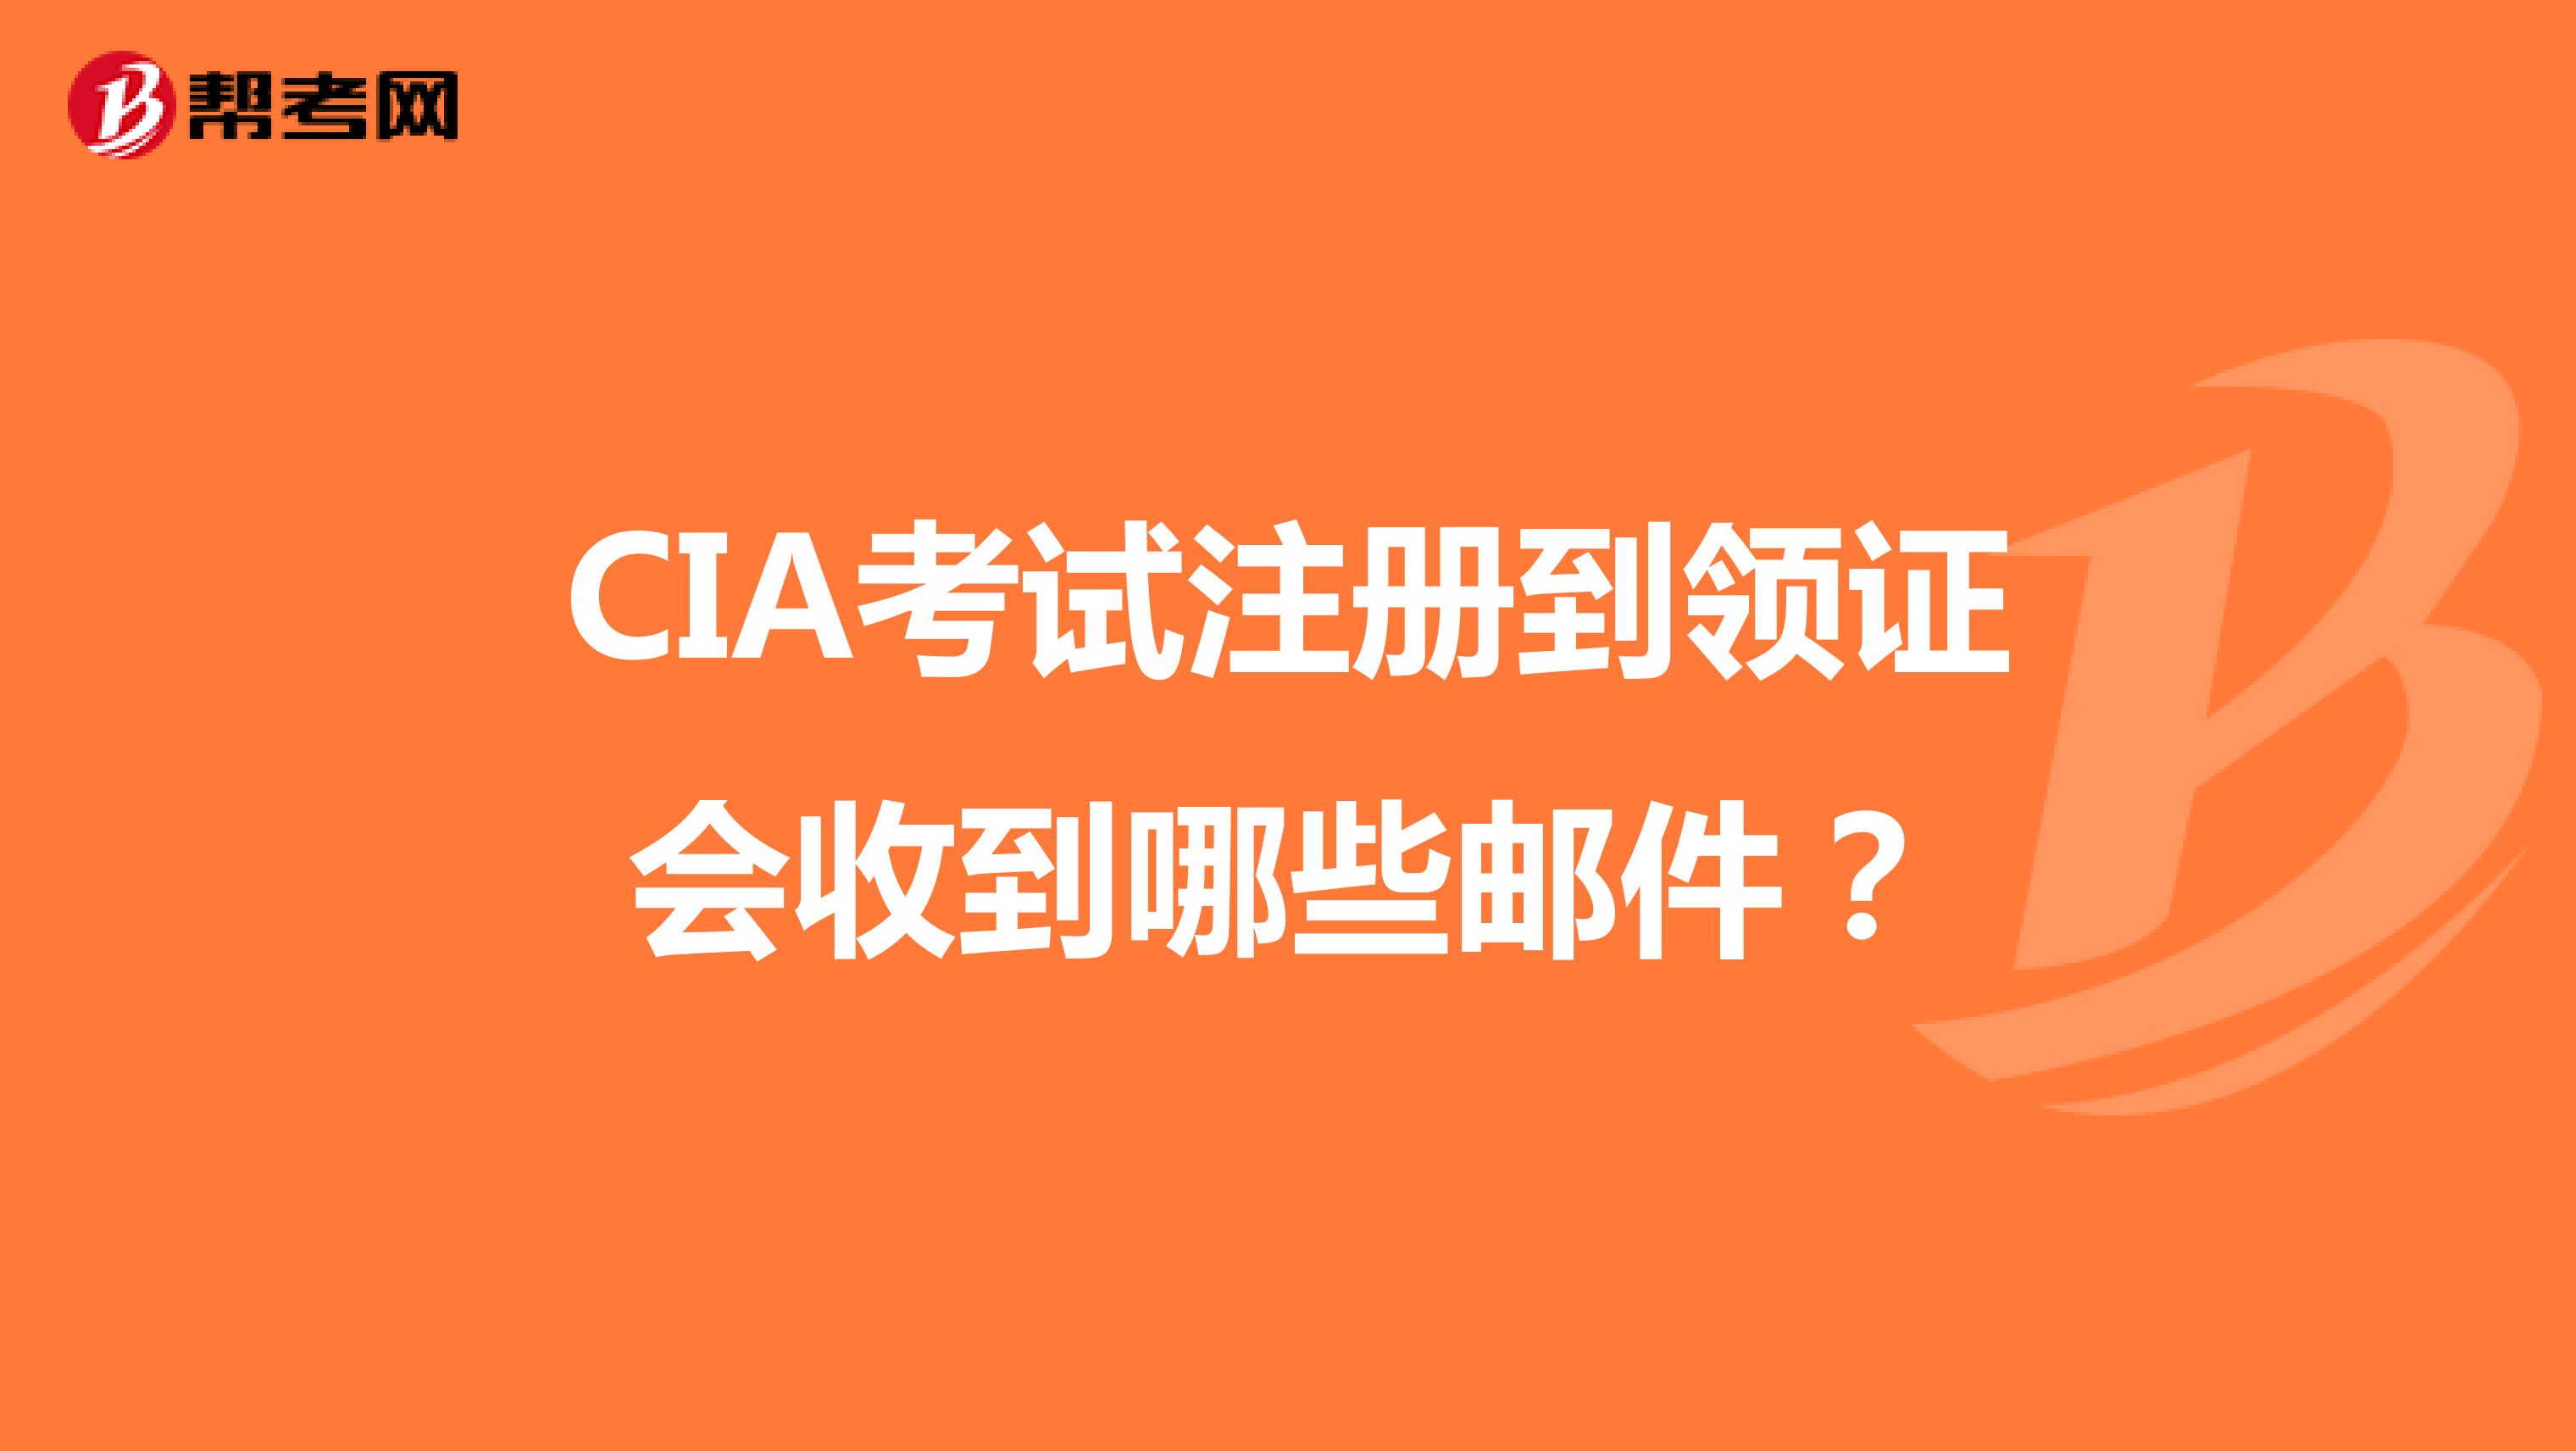 CIA考试注册到领证会收到哪些邮件？